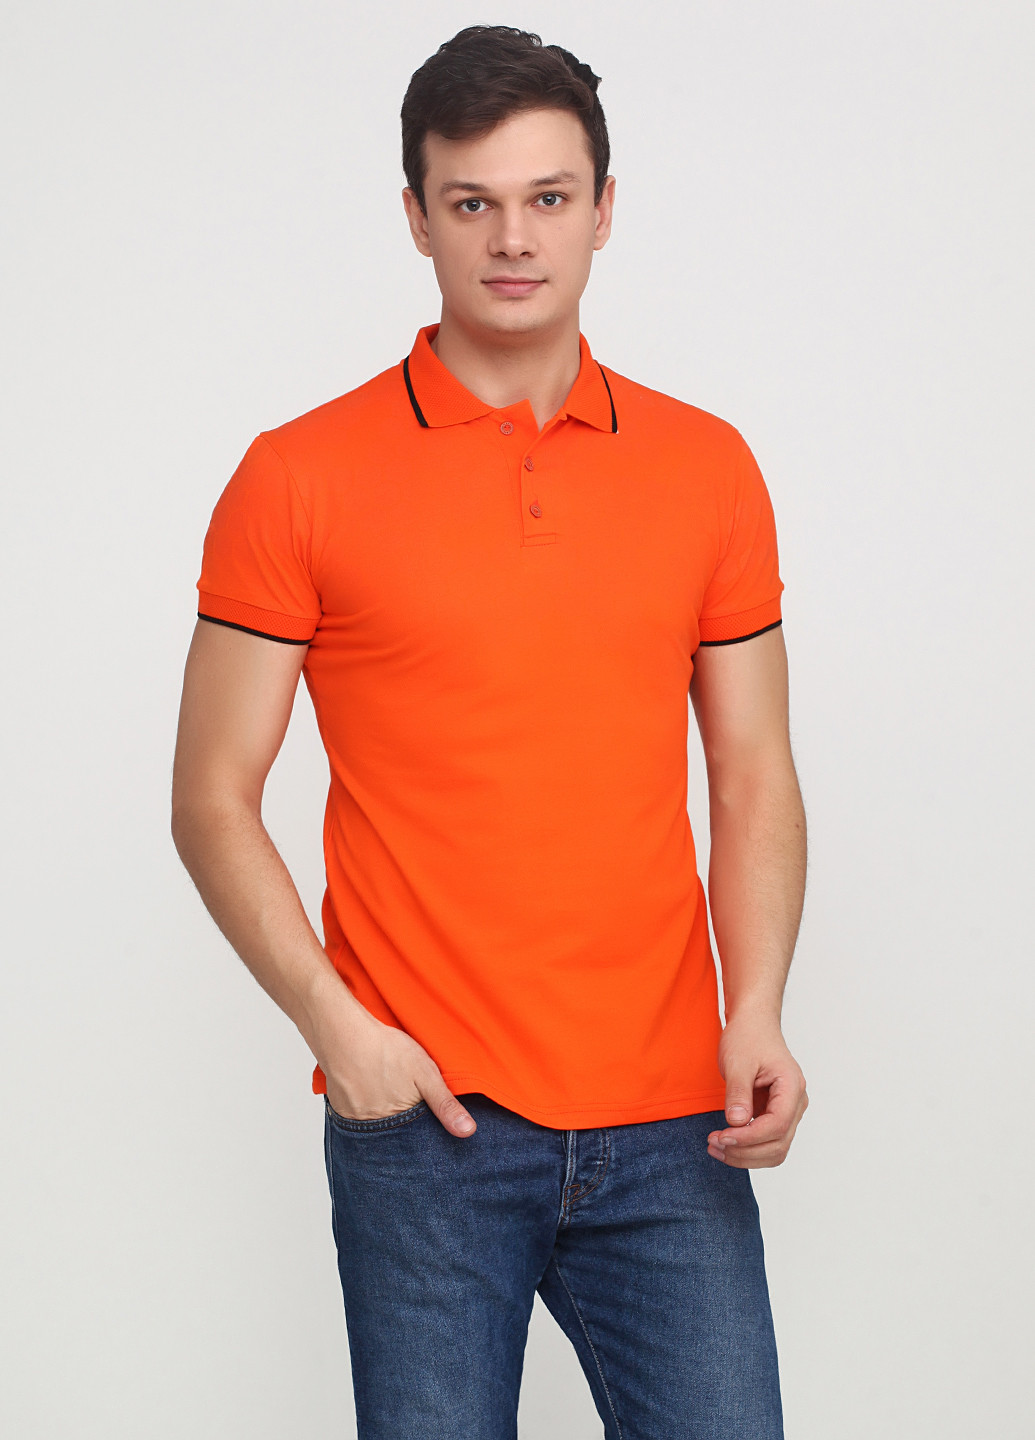 Оранжевая футболка-поло для мужчин EL & KEN однотонная